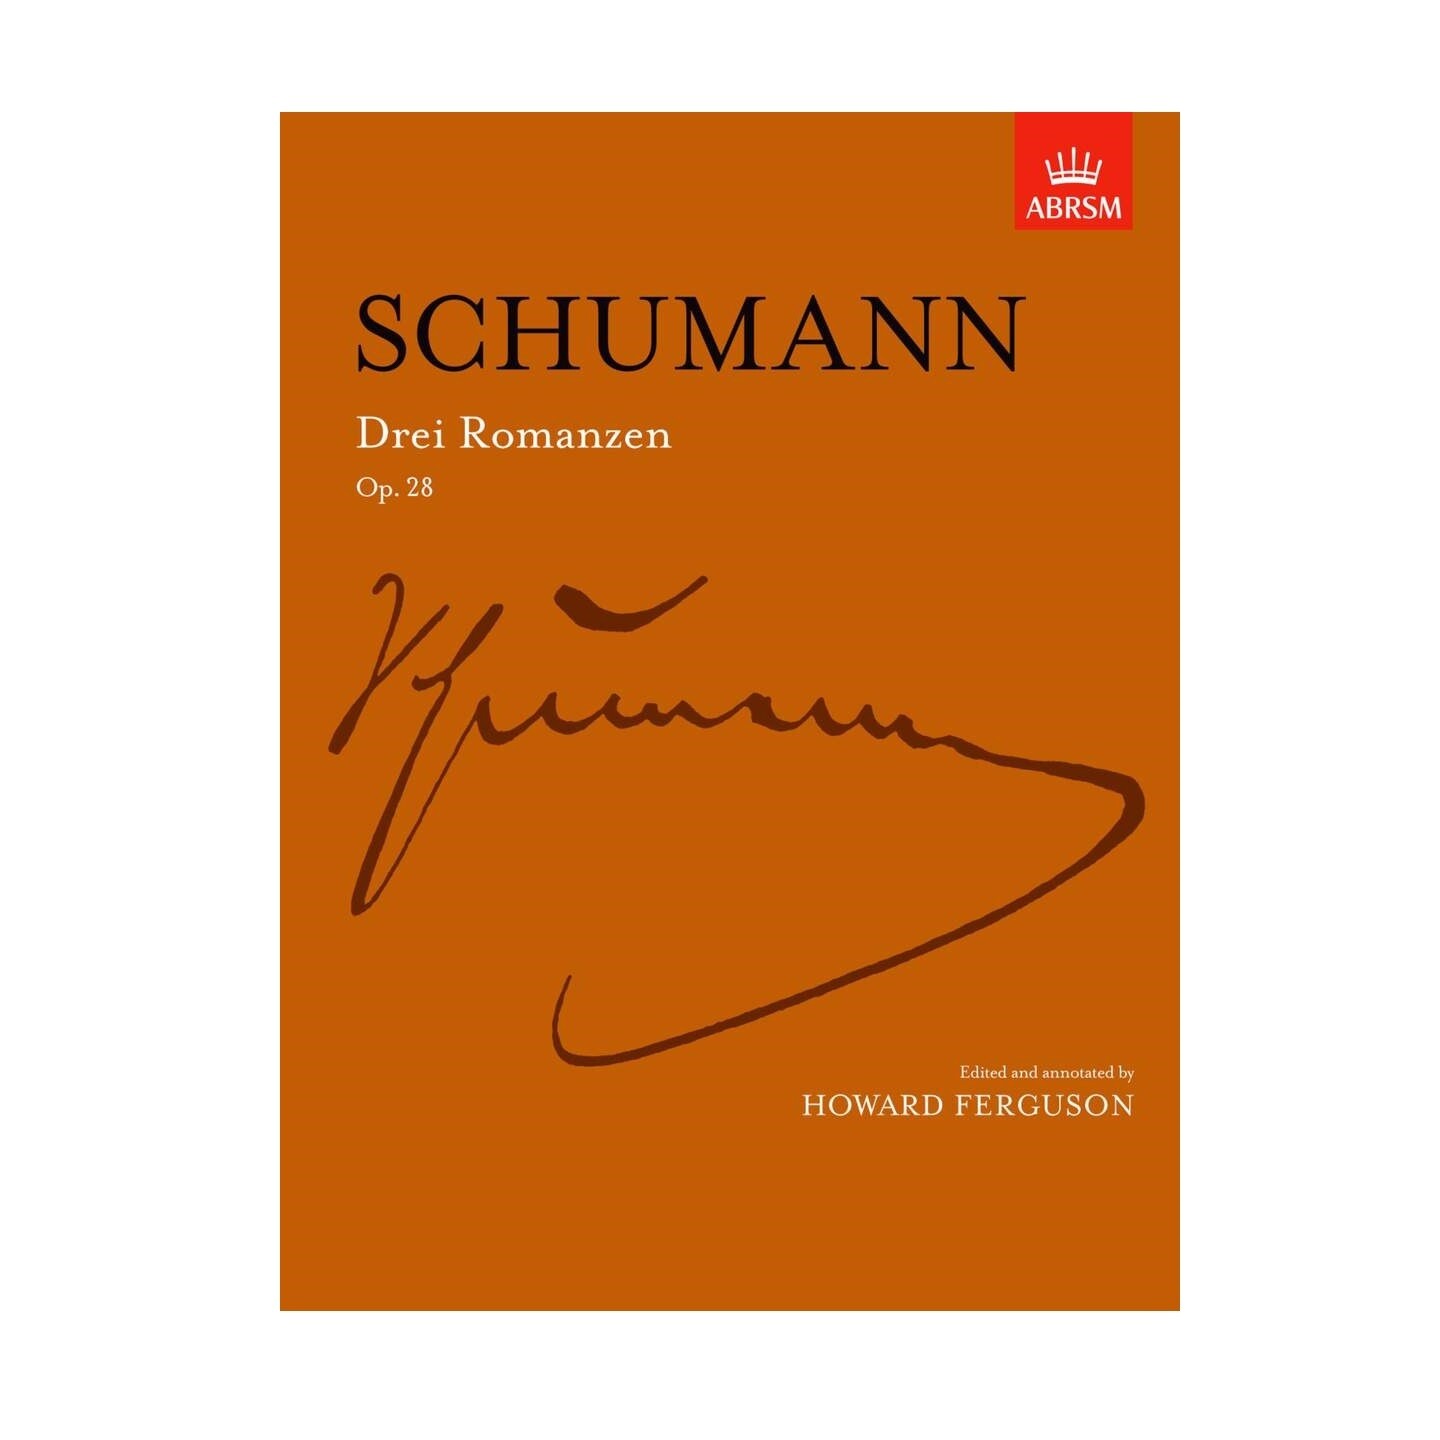 Robert Schumann: Drei Romanzen